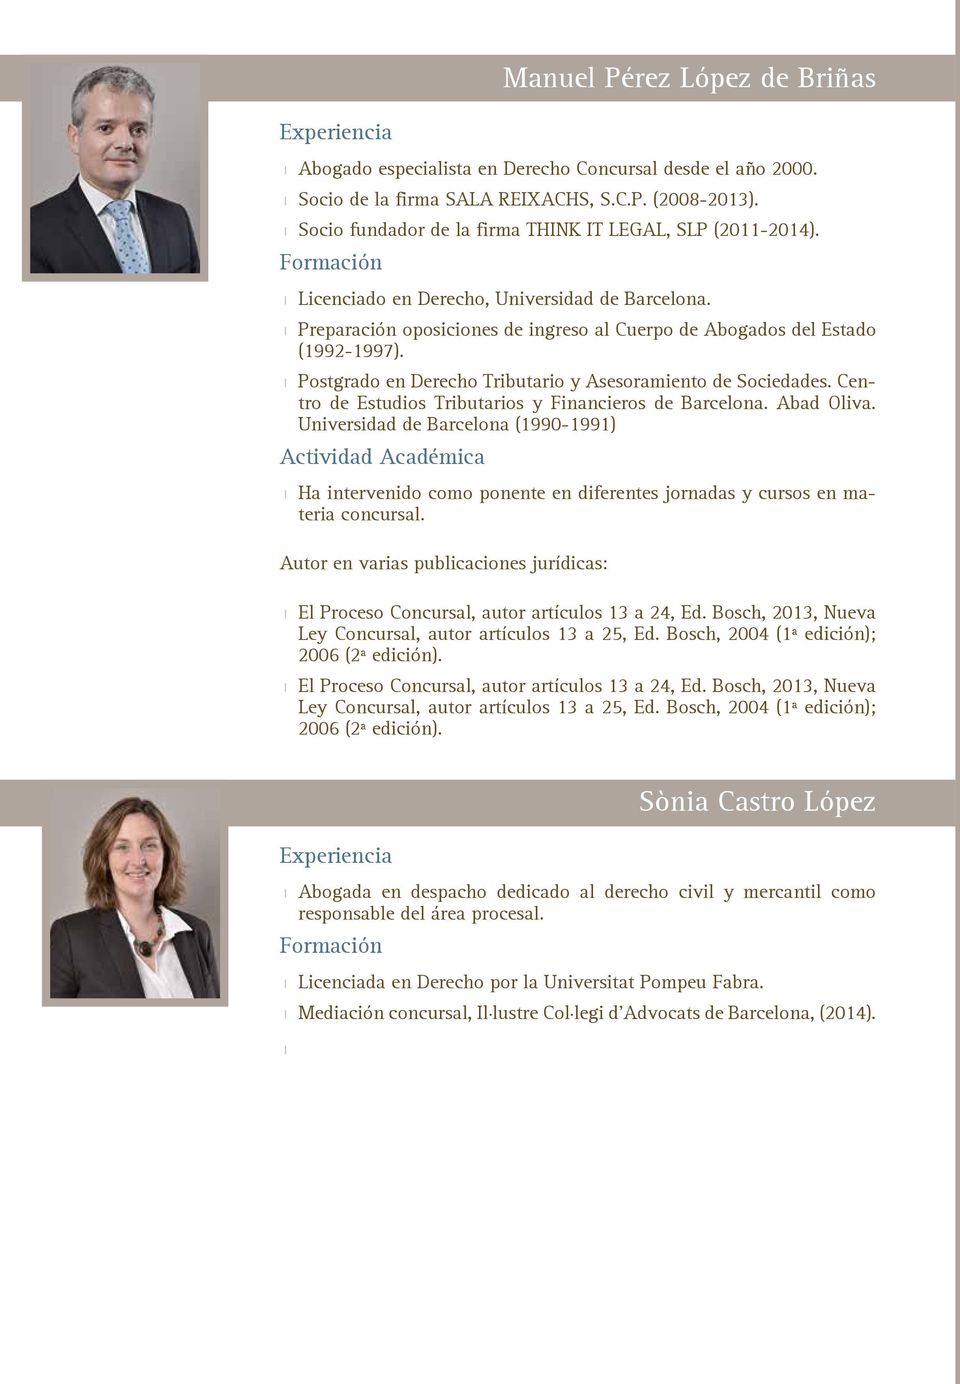 Postgrado en Derecho Tributario y Asesoramiento de Sociedades. Centro de Estudios Tributarios y Financieros de Barcelona. Abad Oliva.